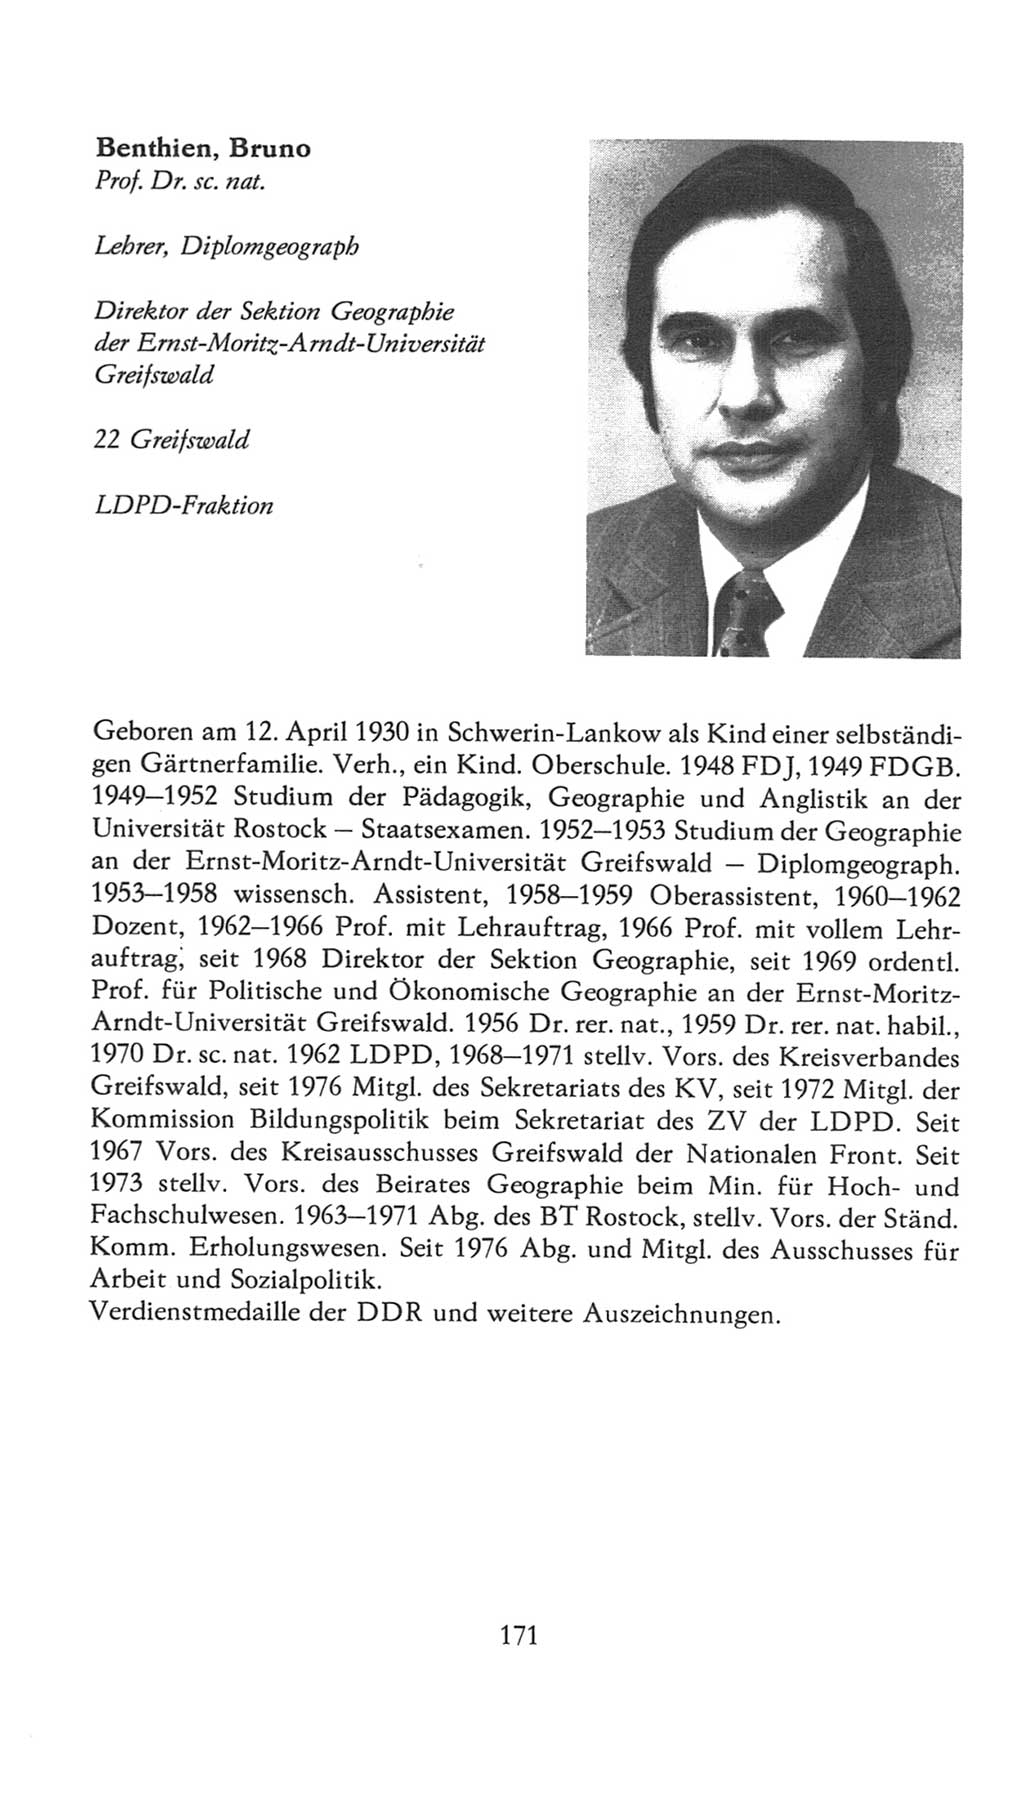 Volkskammer (VK) der Deutschen Demokratischen Republik (DDR), 7. Wahlperiode 1976-1981, Seite 171 (VK. DDR 7. WP. 1976-1981, S. 171)